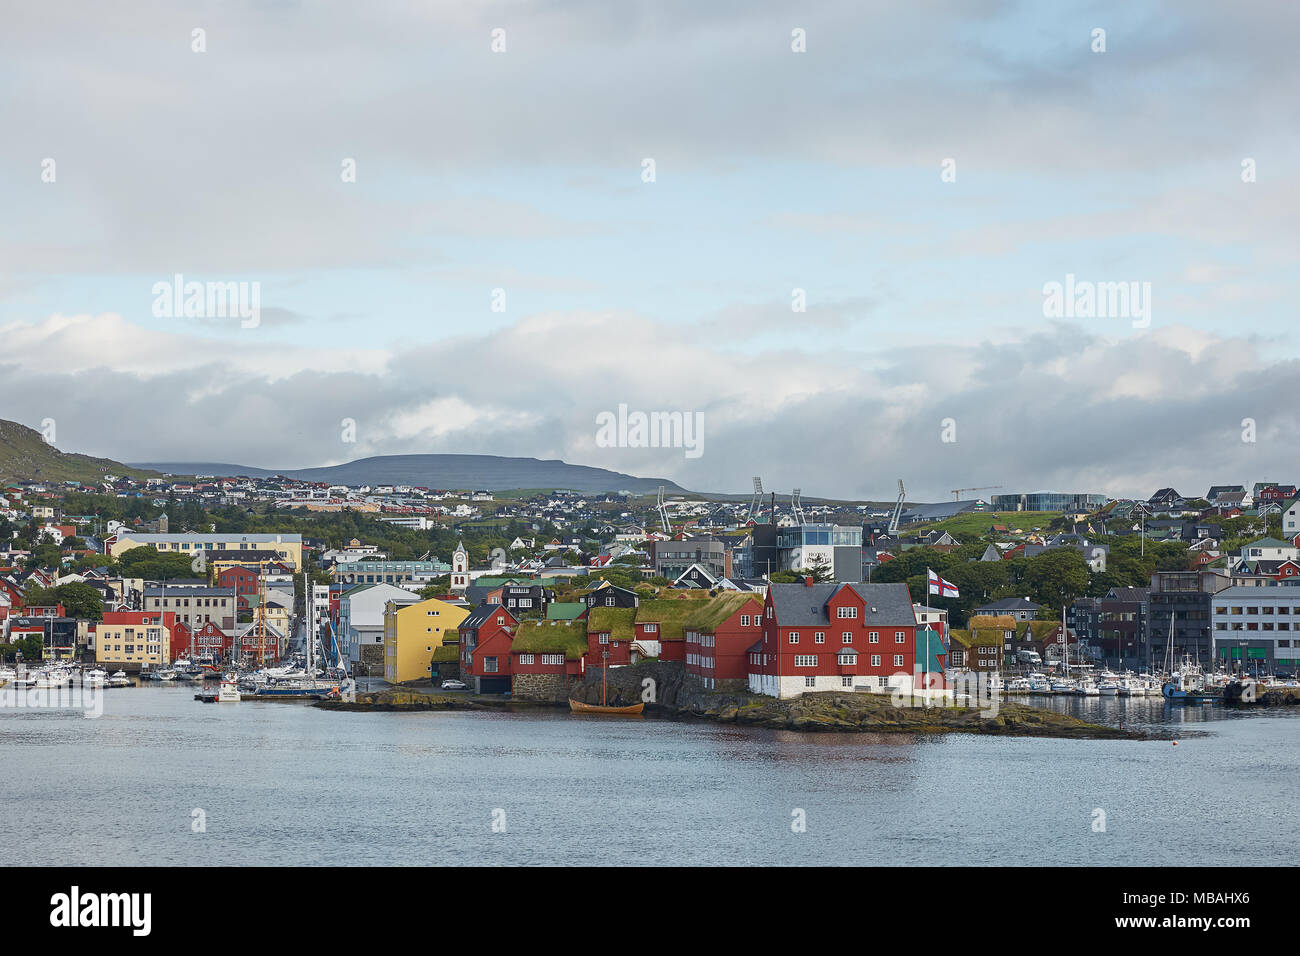 TORSHAWN, FÄRÖER, Dänemark - 21 August 2018: Übersicht über die Innenstadt und die Bucht von Torshawn, die Hauptstadt der Färöer, Dänemark. Stockfoto